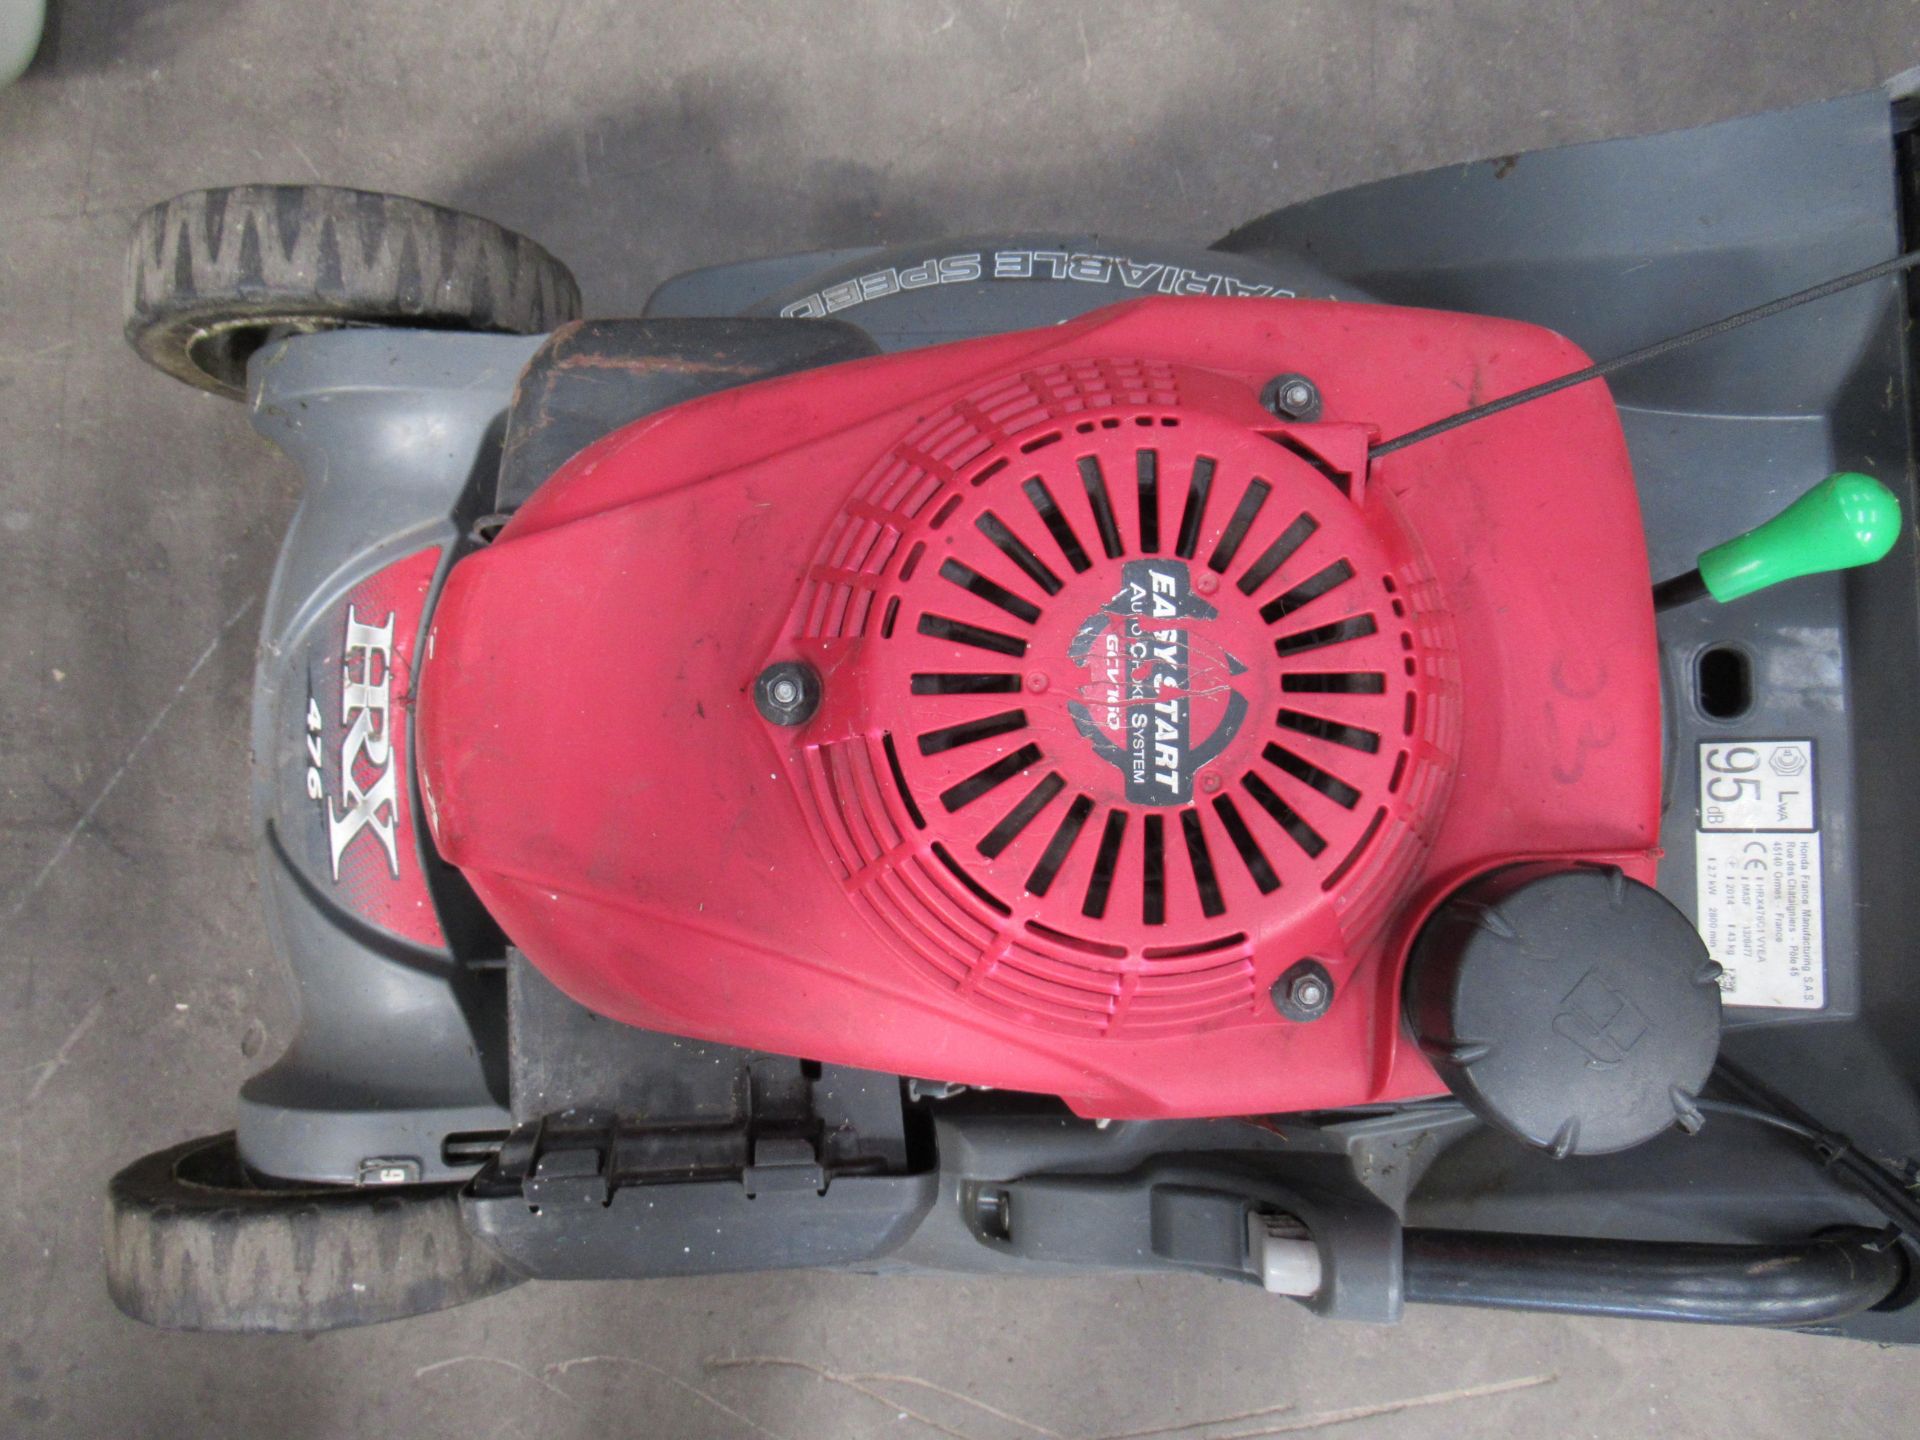 Honda HRX 476VY 19" rotary, rota stop, vari drive, versimulch mower - Image 3 of 7